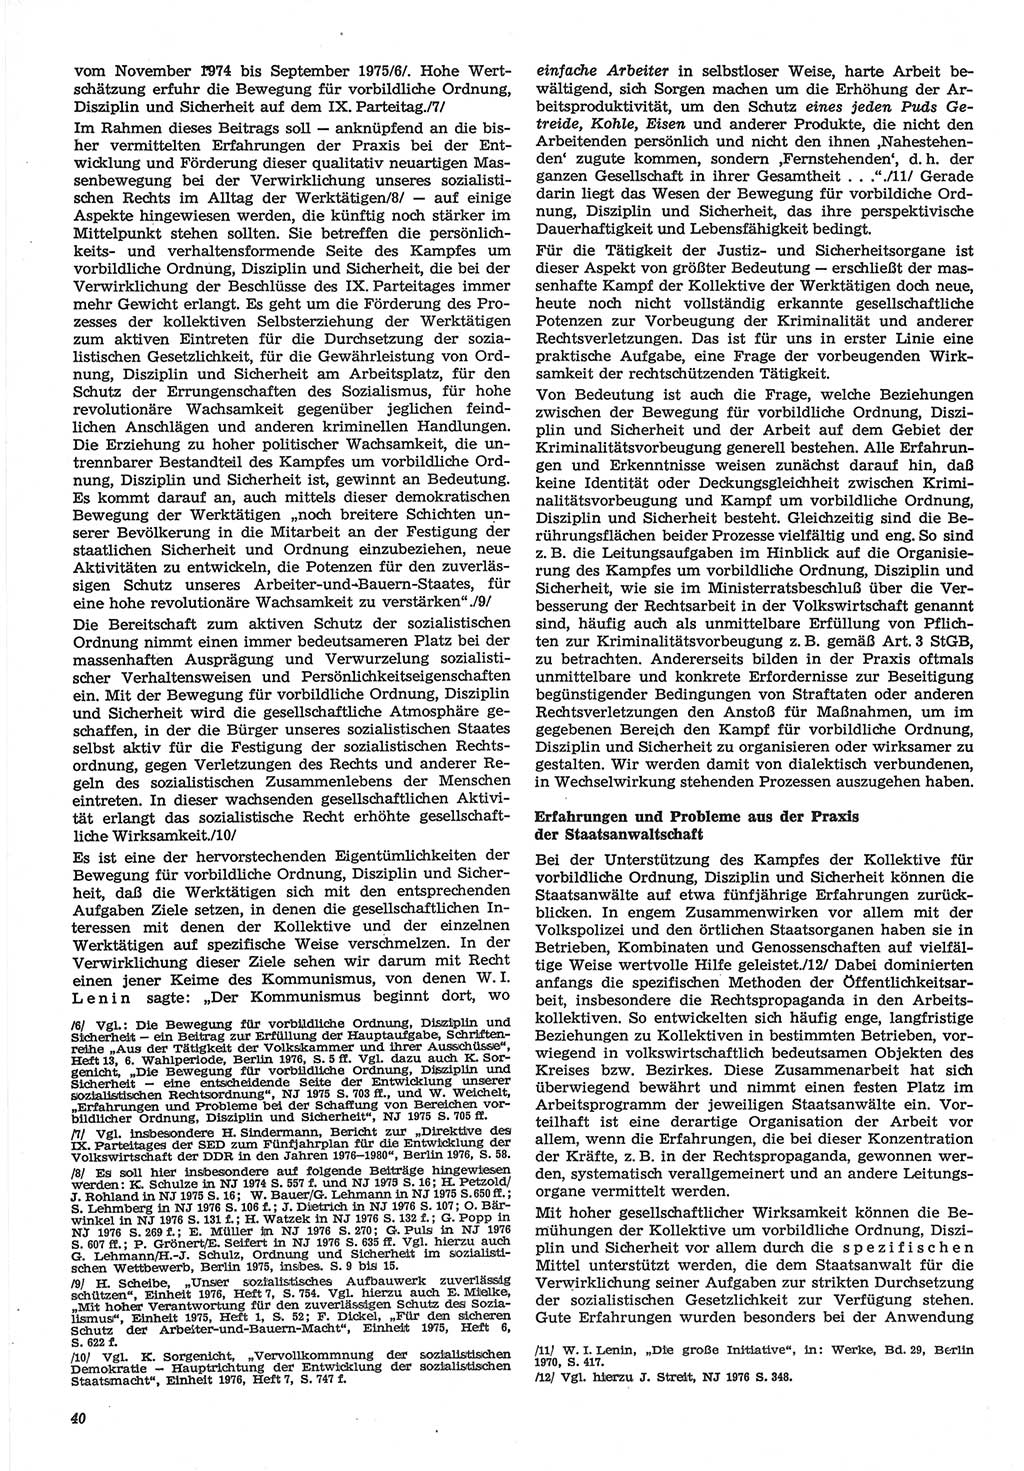 Neue Justiz (NJ), Zeitschrift für Recht und Rechtswissenschaft-Zeitschrift, sozialistisches Recht und Gesetzlichkeit, 31. Jahrgang 1977, Seite 40 (NJ DDR 1977, S. 40)